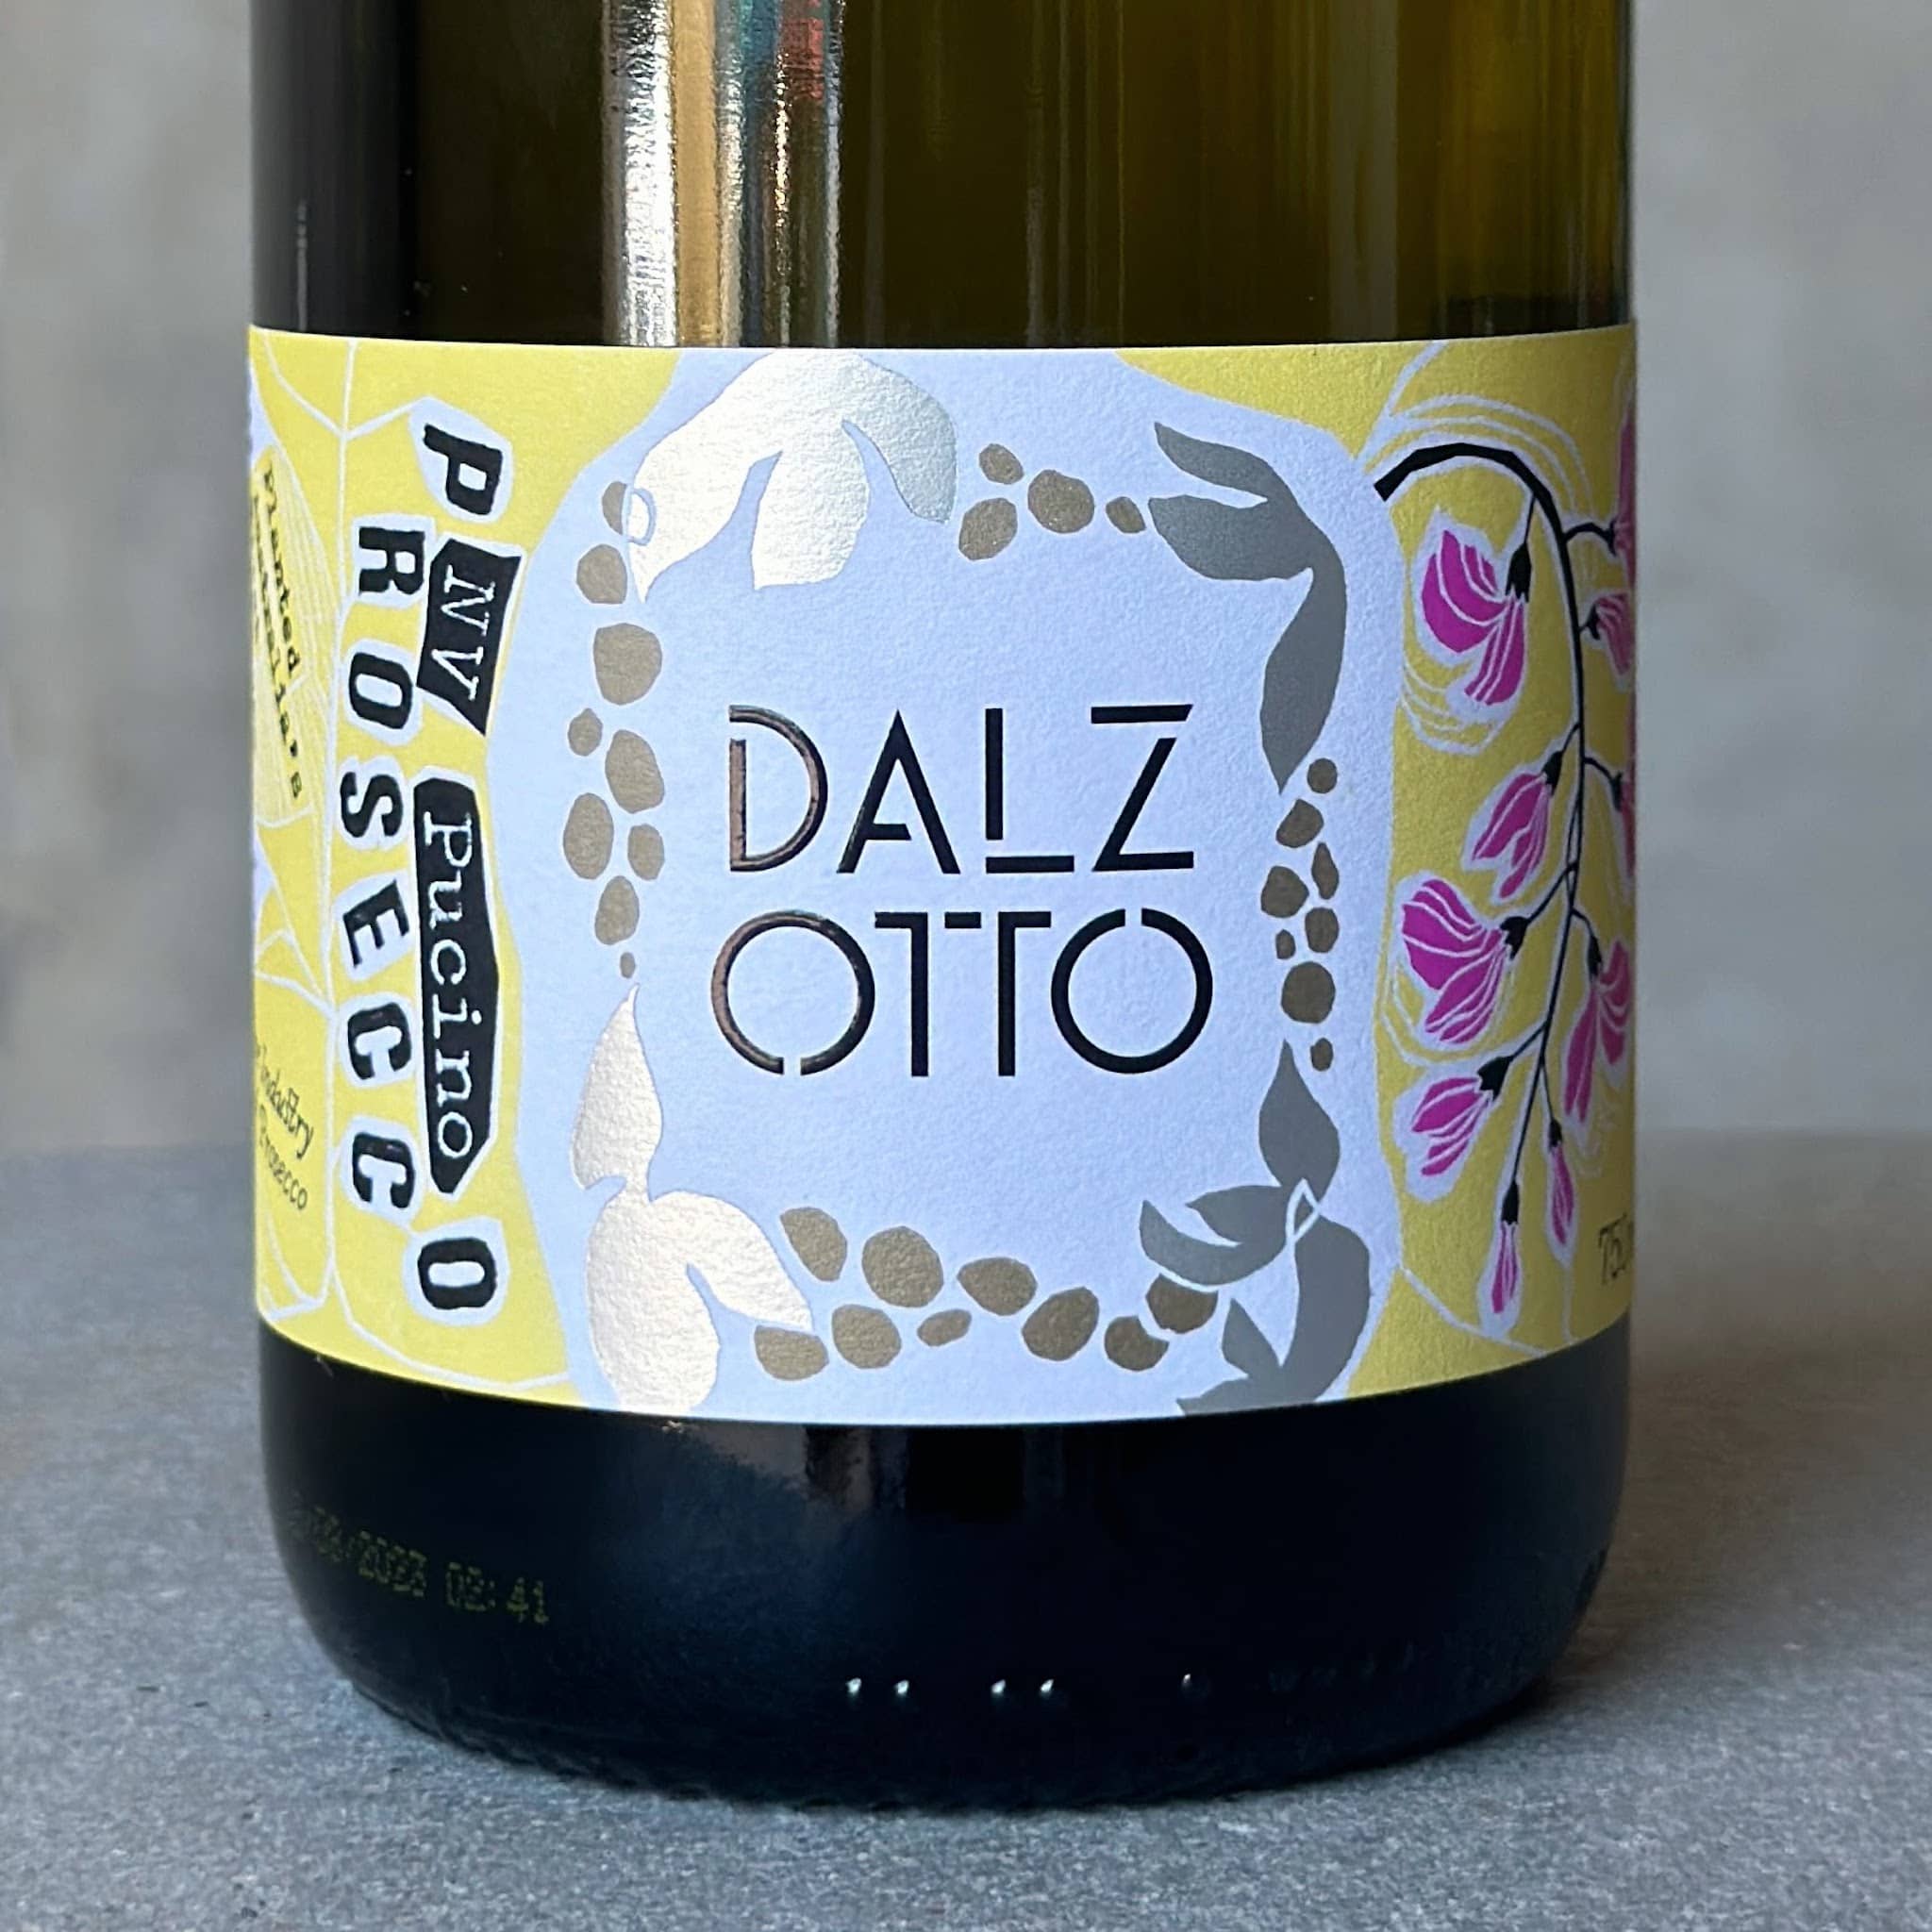 Wine Label Dalz Otto Prosecco